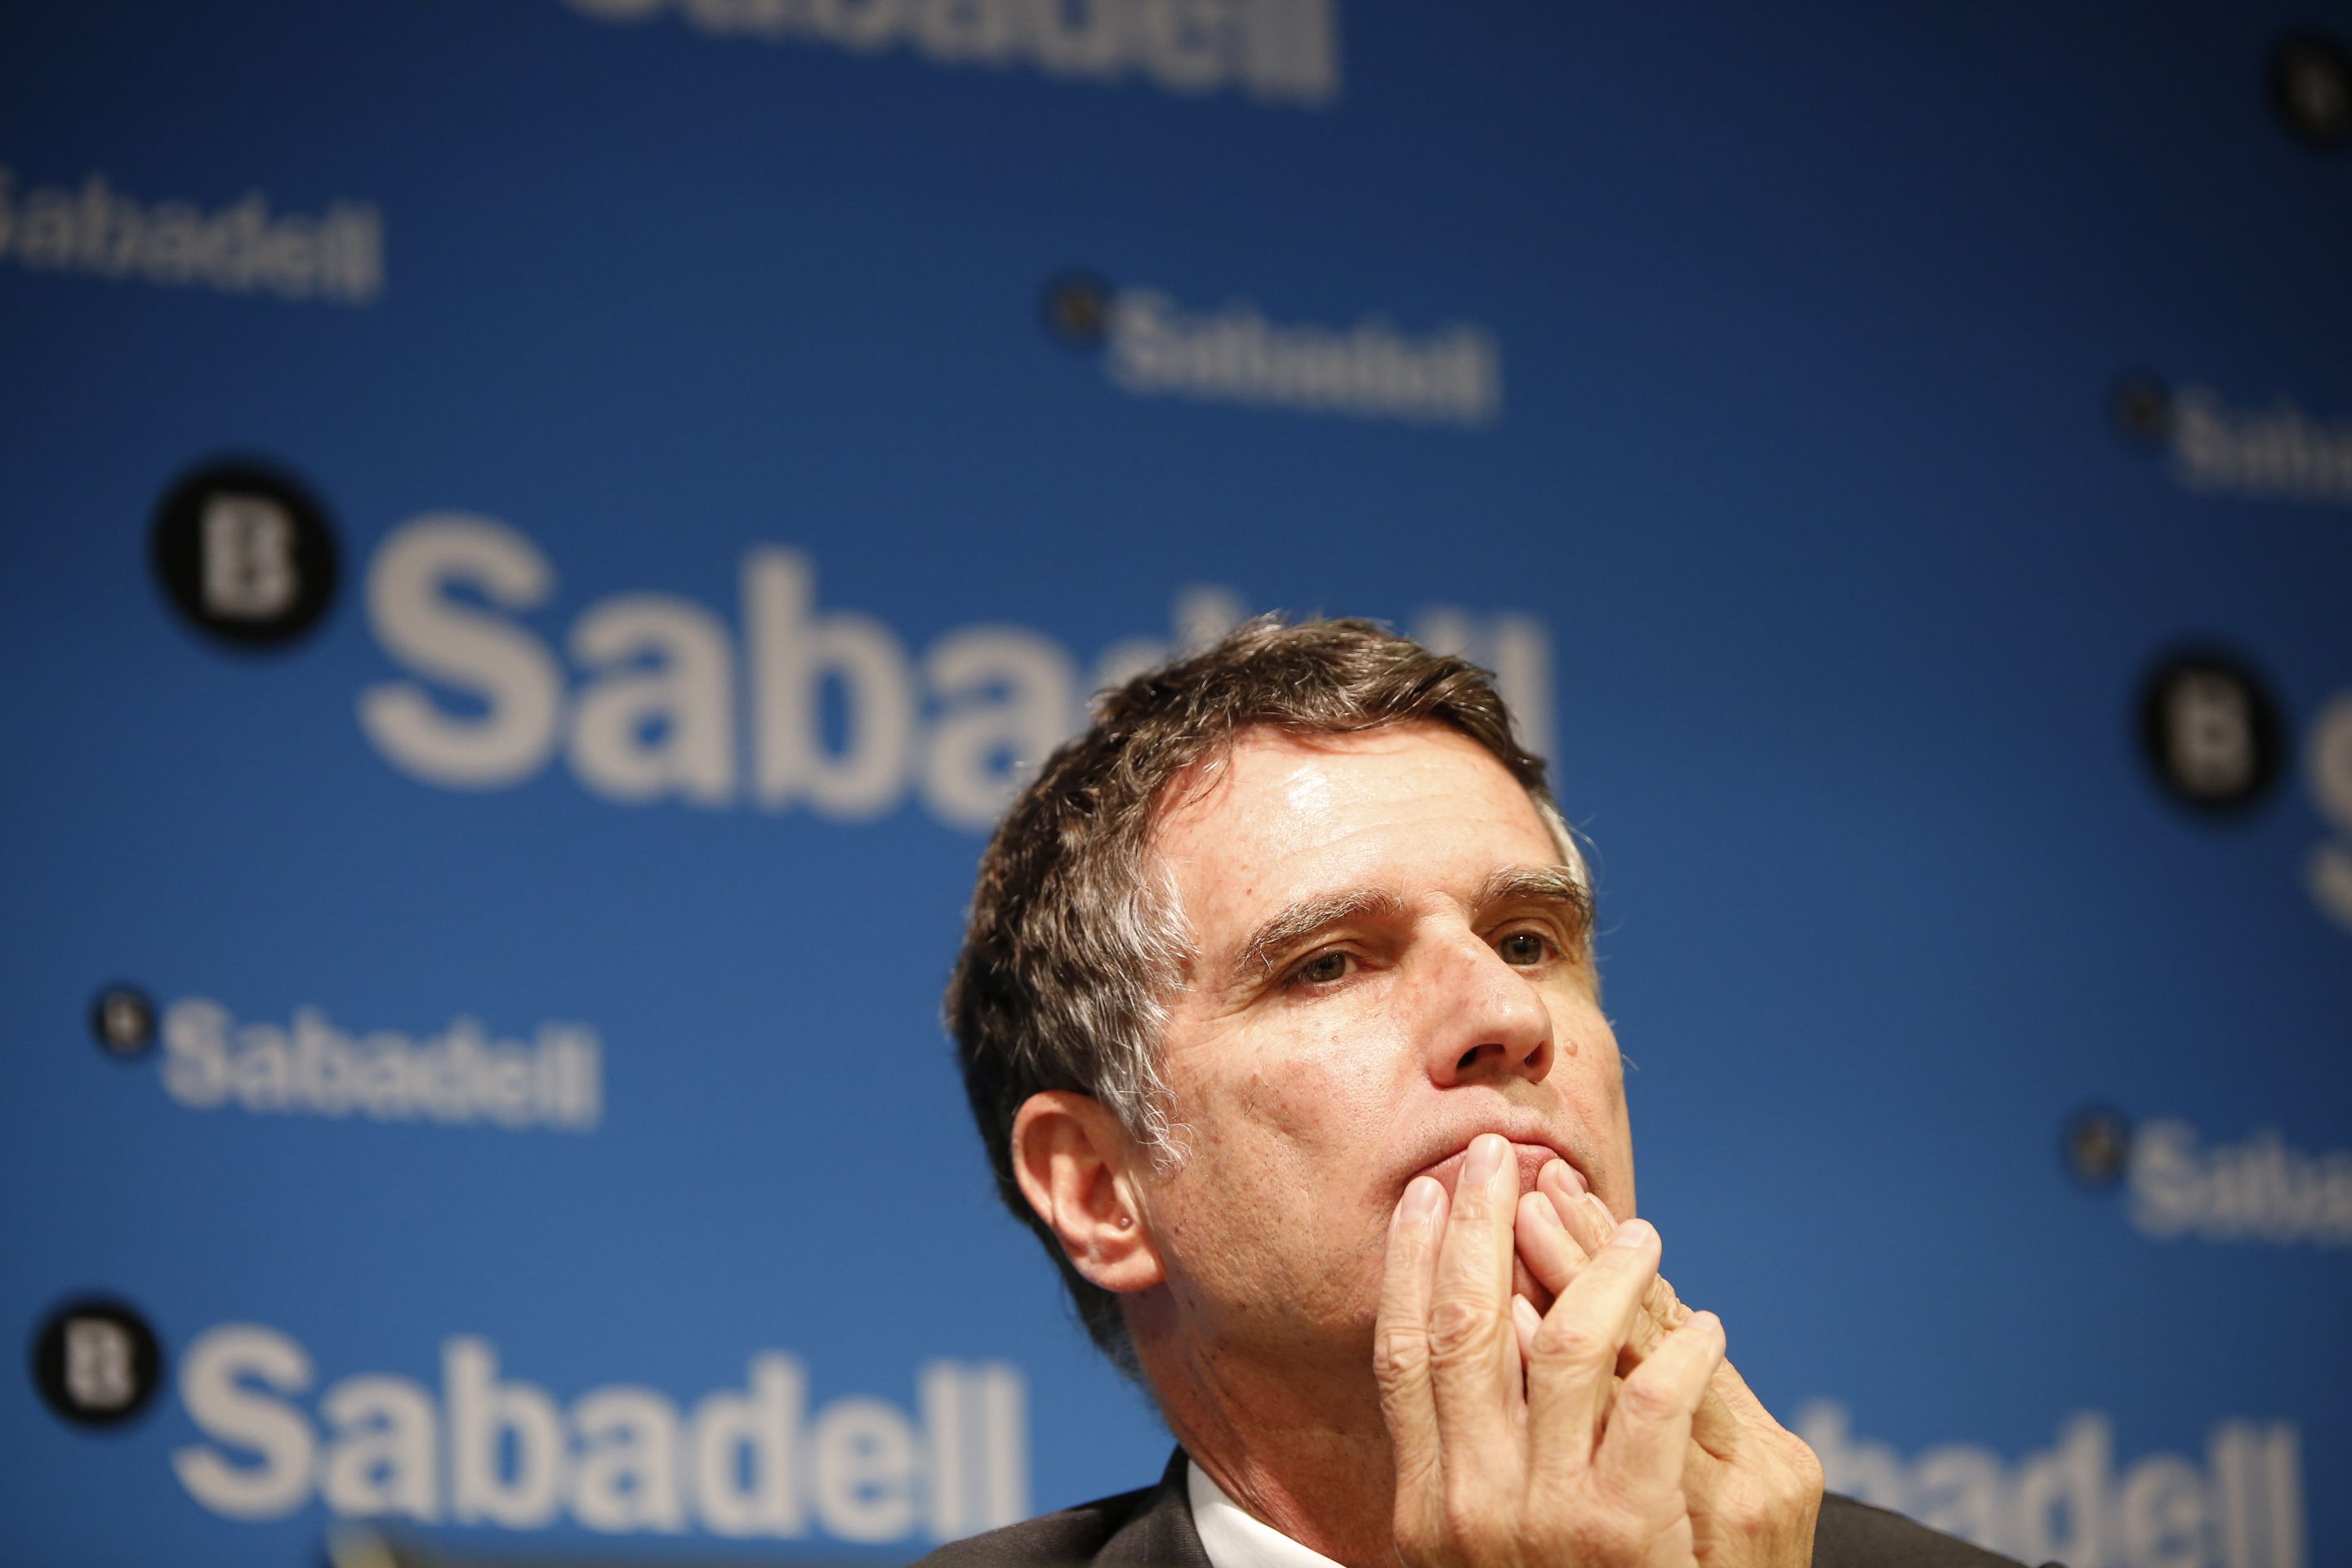 Guardiola ve oportuno esperar dos años para nuevas fusiones bancarias